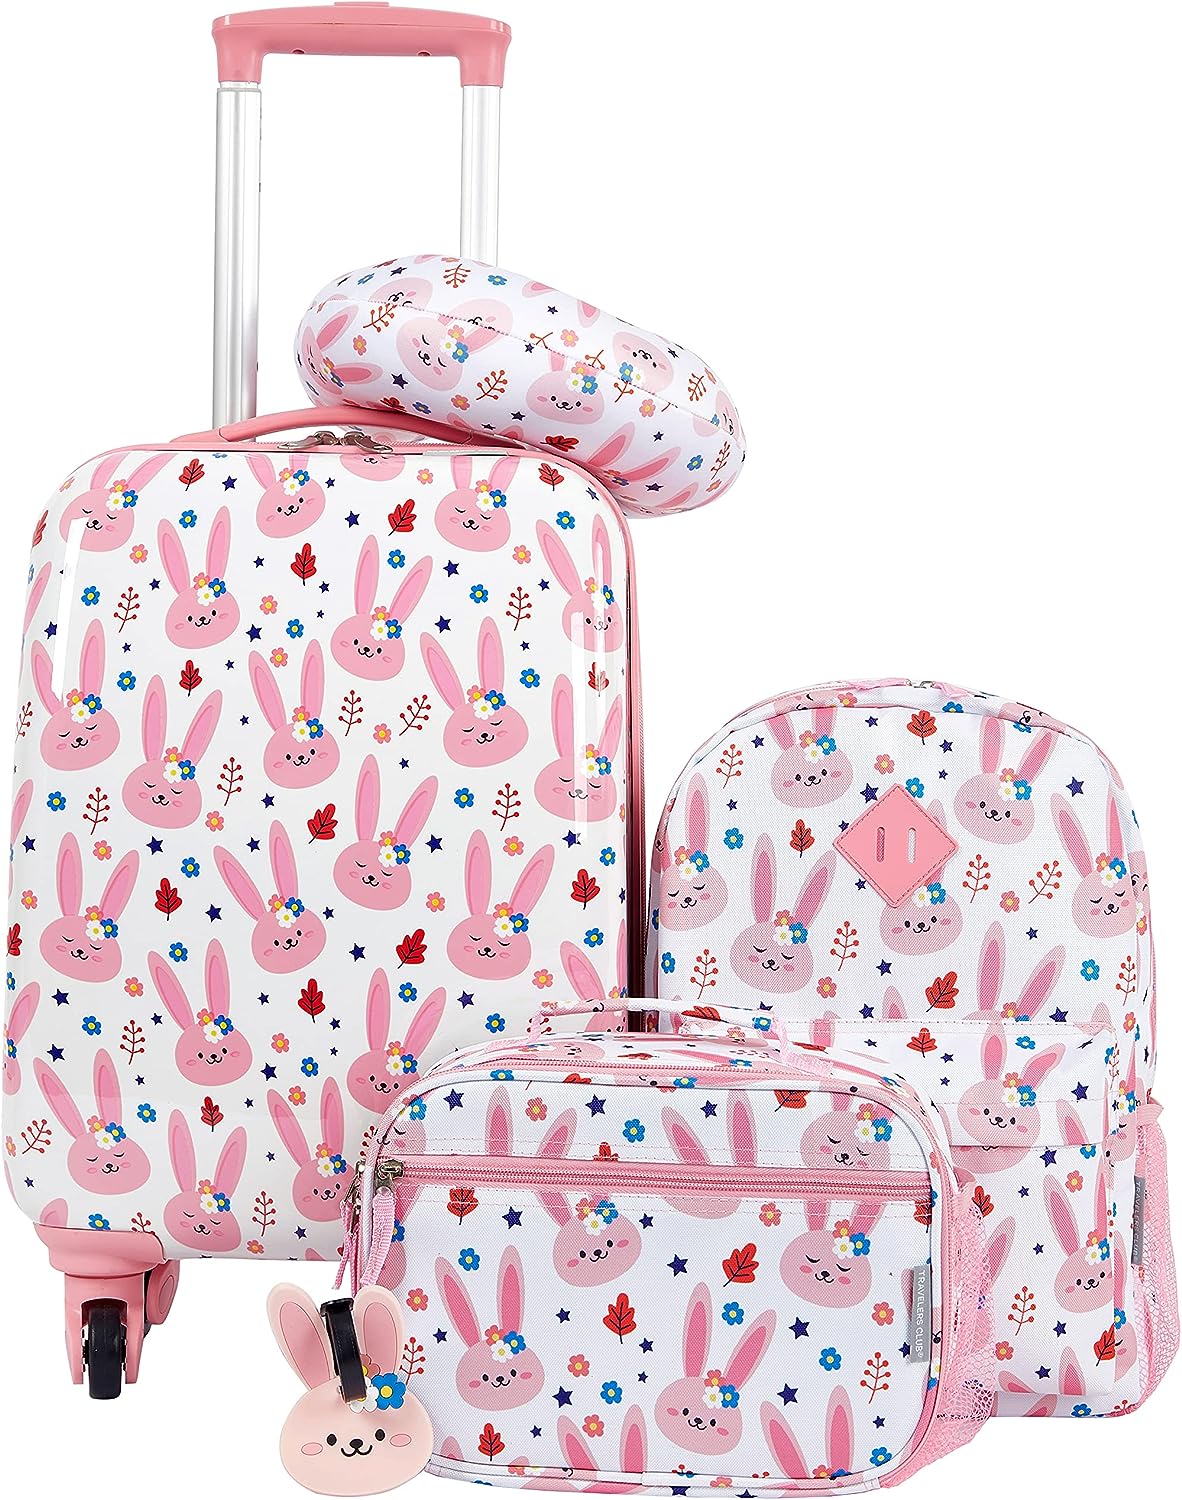 Travelers Club 5 Piece Kids Luggage Set, Bunny